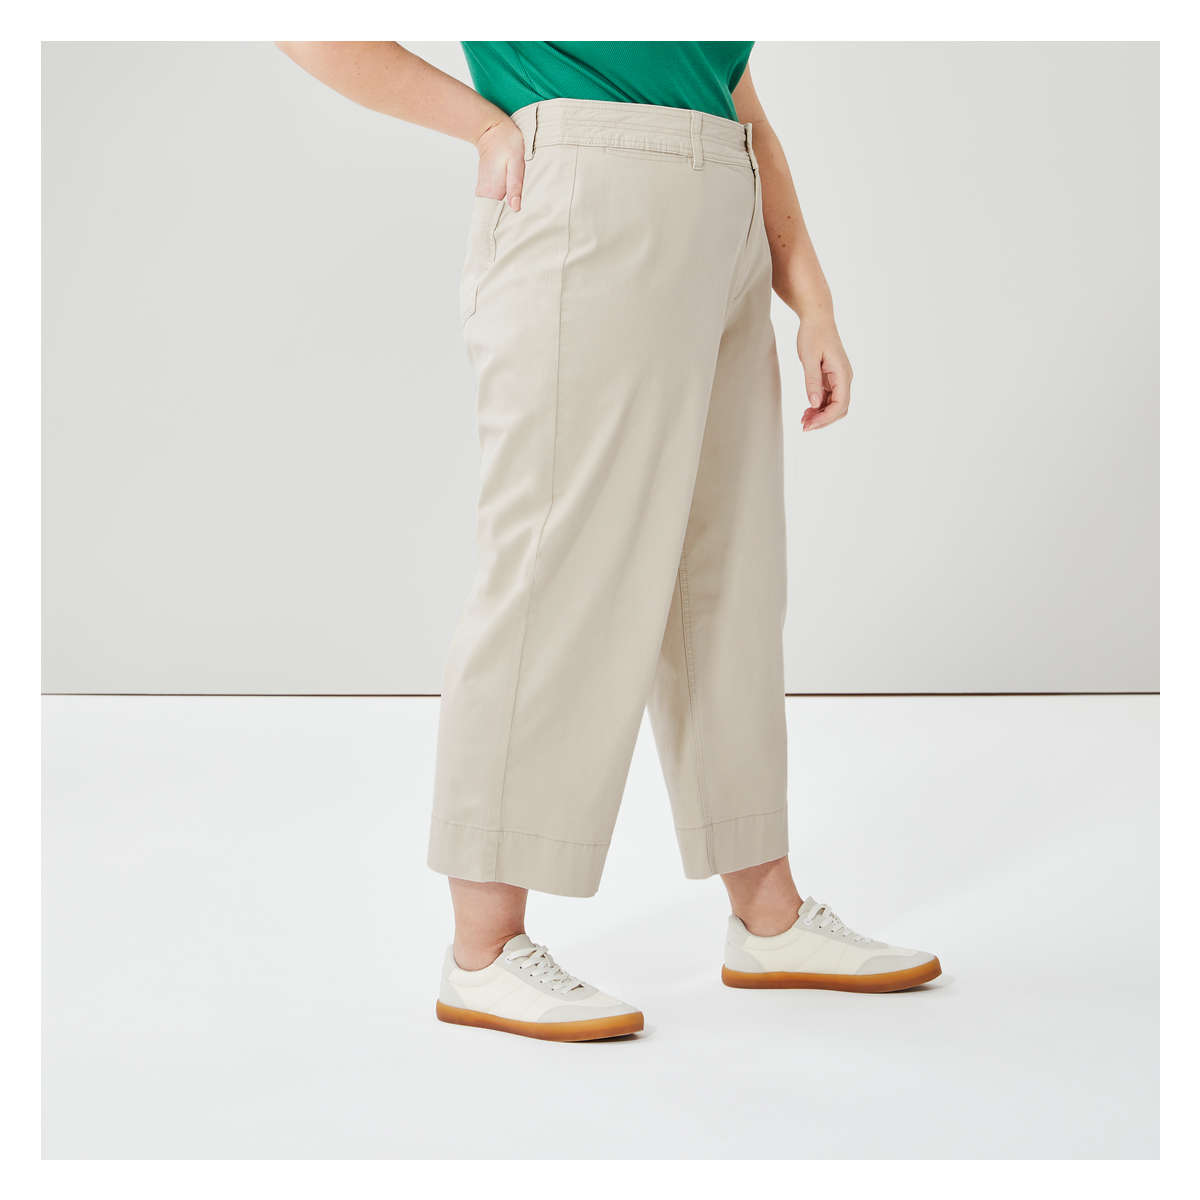 Low-waist Pull-on Pants - Light taupe - Ladies